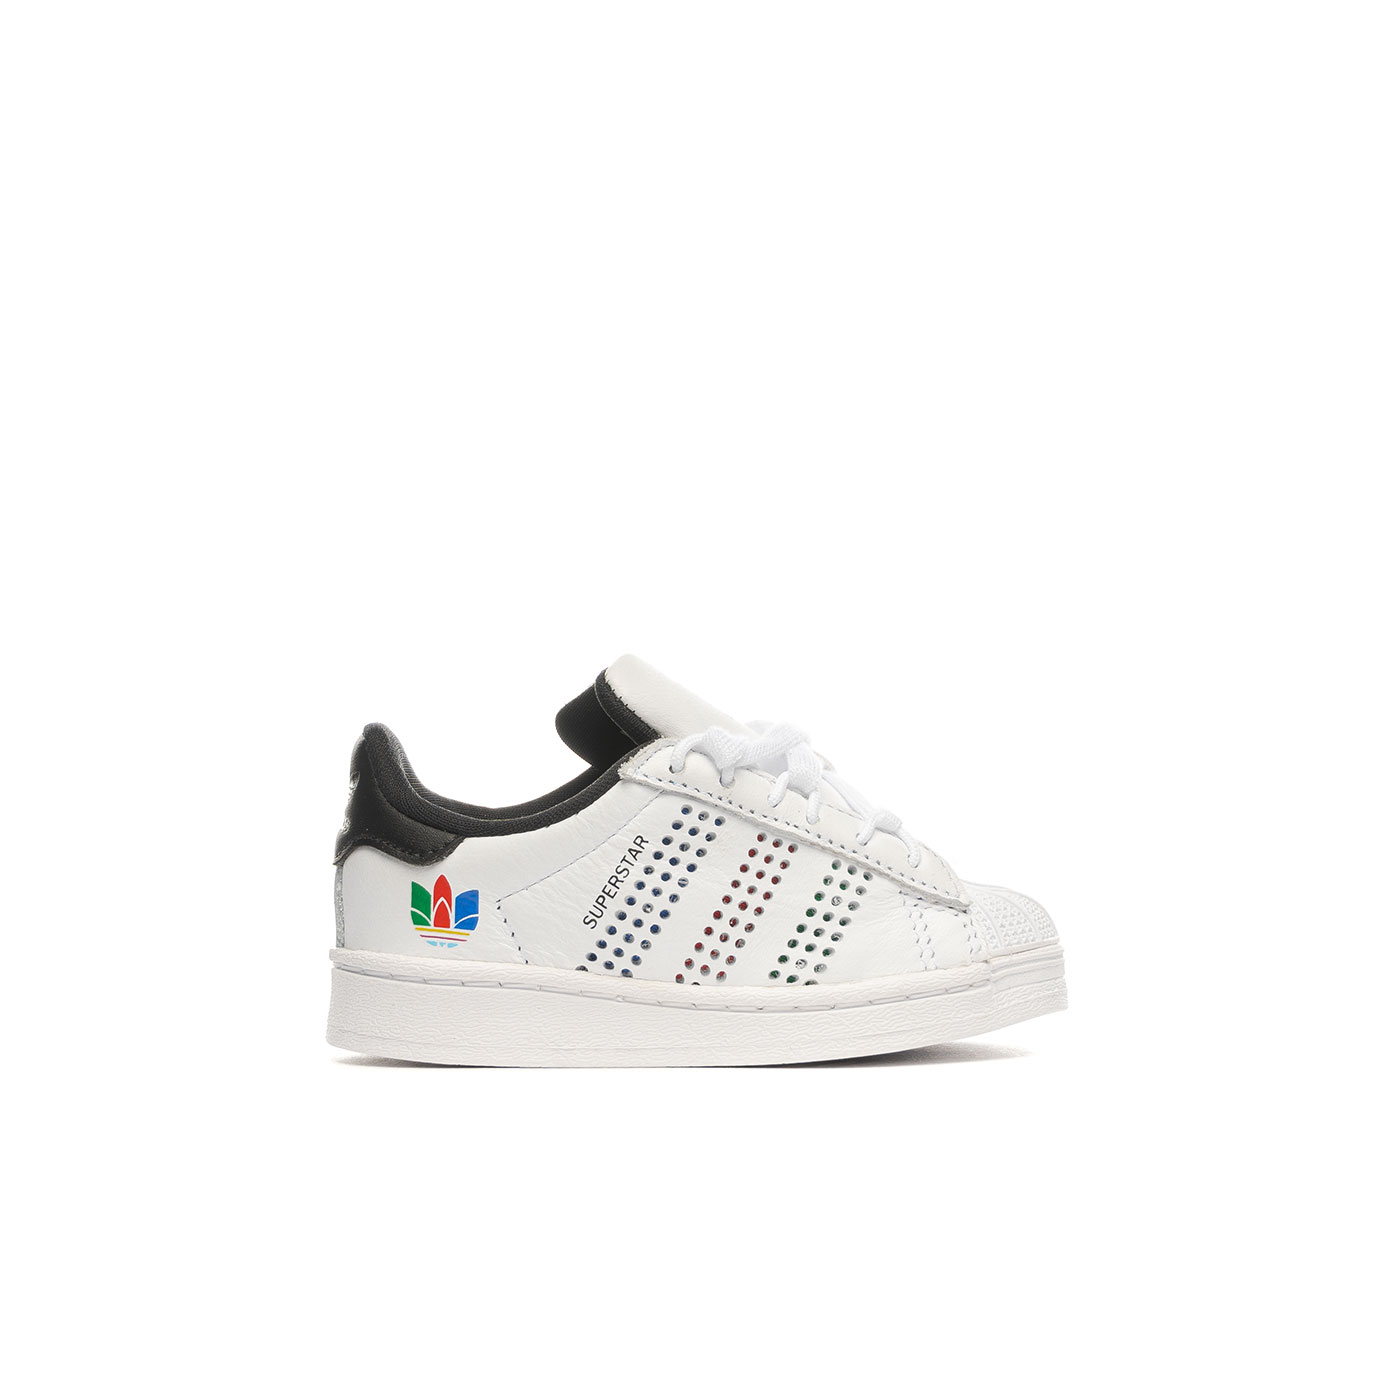 Voordracht Kijker spiraal Sneakers ADIDAS Superstar I White for Infant | claquette adidas decathlon  sneakers black | SadtuShops | FX7454